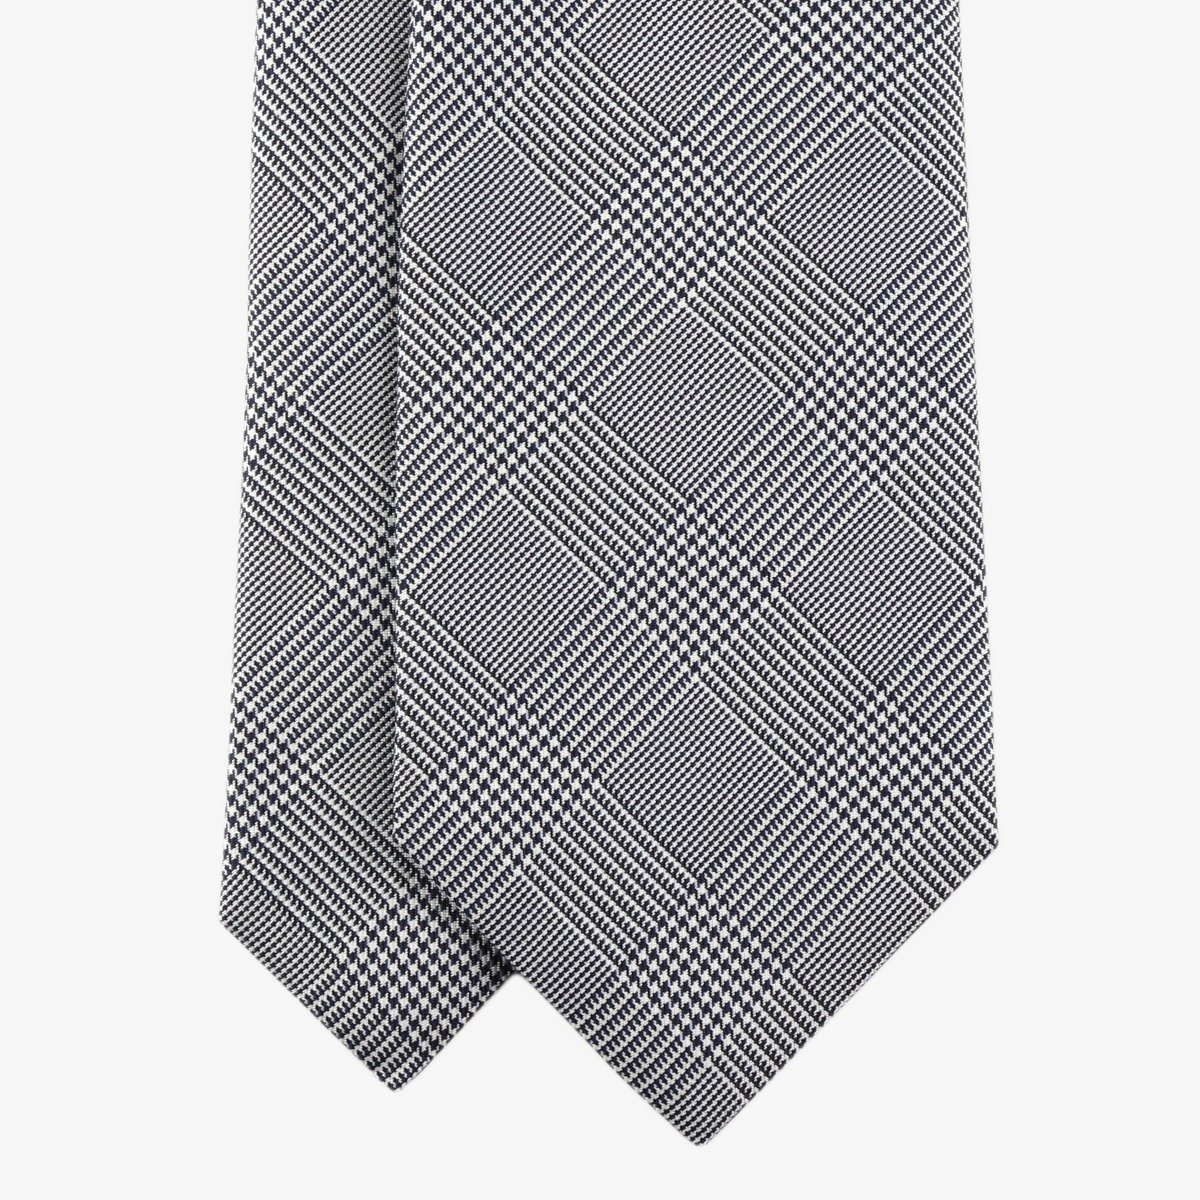 Shibumi Firenze tamsiai mėlynas ir baltas glencheck šilkinis kaklaraištis